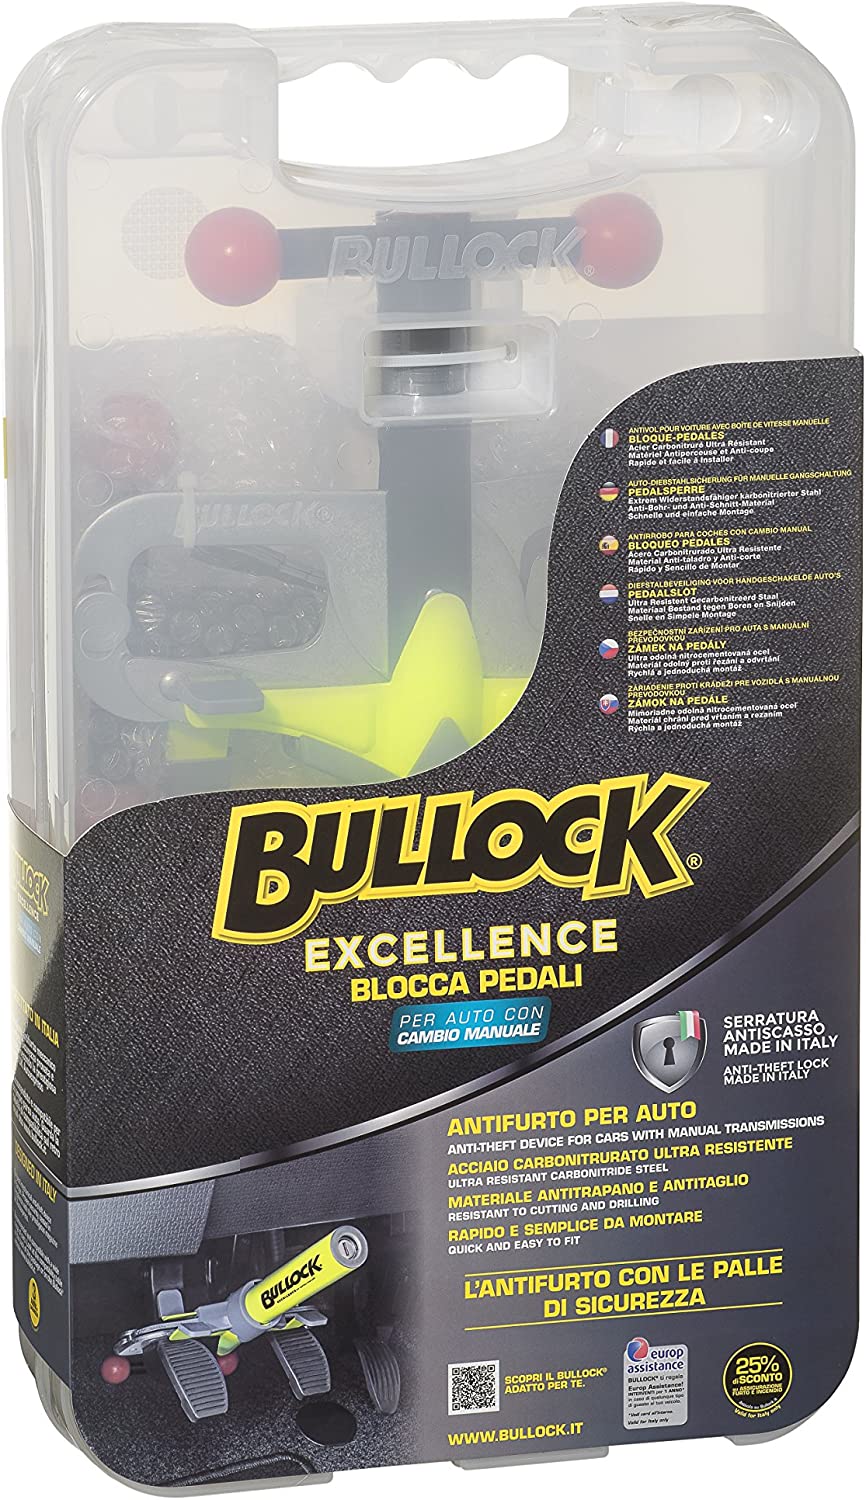 Antifurto Bullock per auto con cambio manuale mod. Excellence W